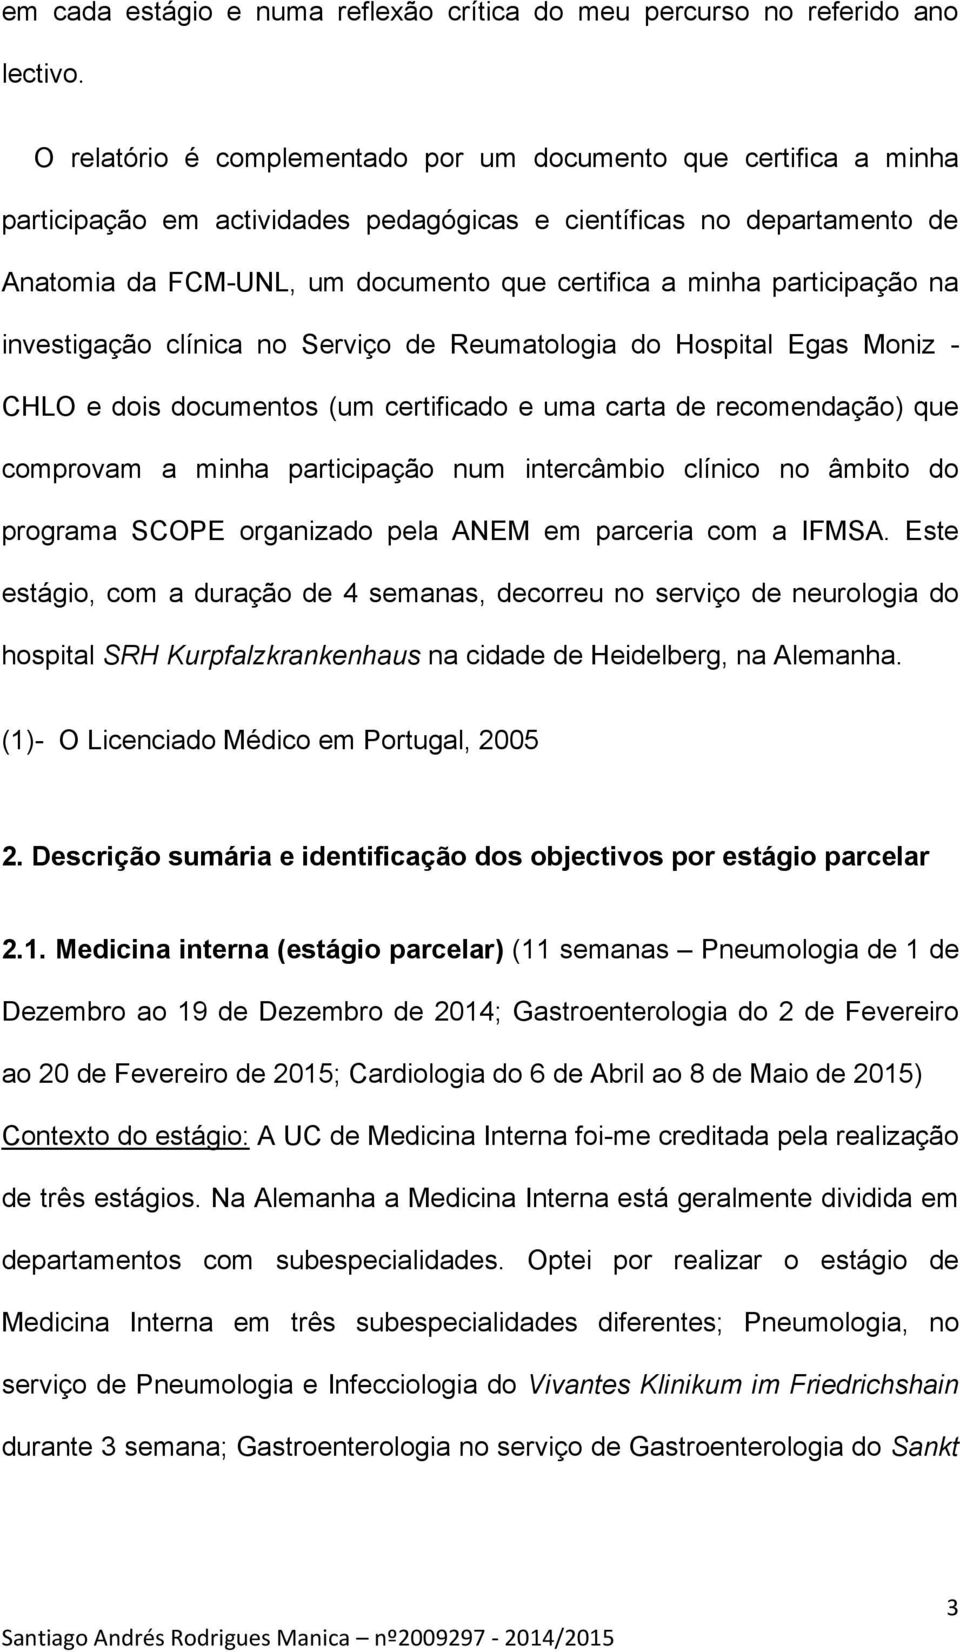 participação na investigação clínica no Serviço de Reumatologia do Hospital Egas Moniz - CHLO e dois documentos (um certificado e uma carta de recomendação) que comprovam a minha participação num